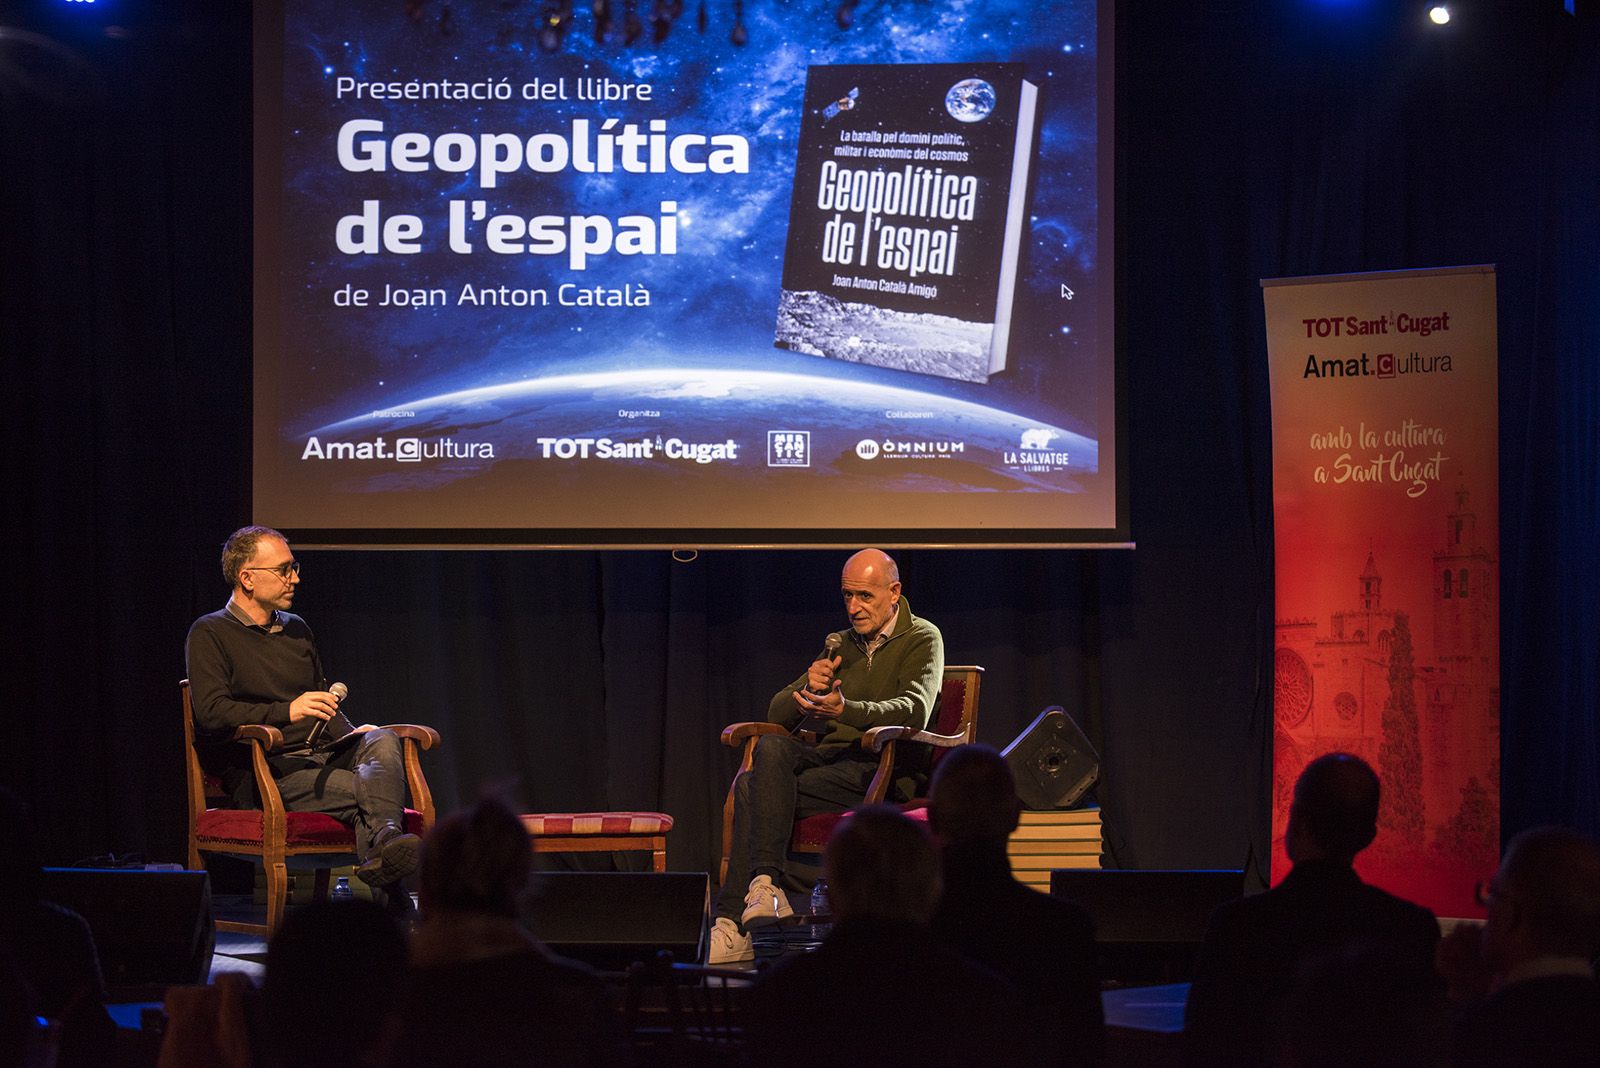 Presentació del llibre 'Geopolítica de l'espai' de Joan Anton Català. FOTO: Bernat Millet.